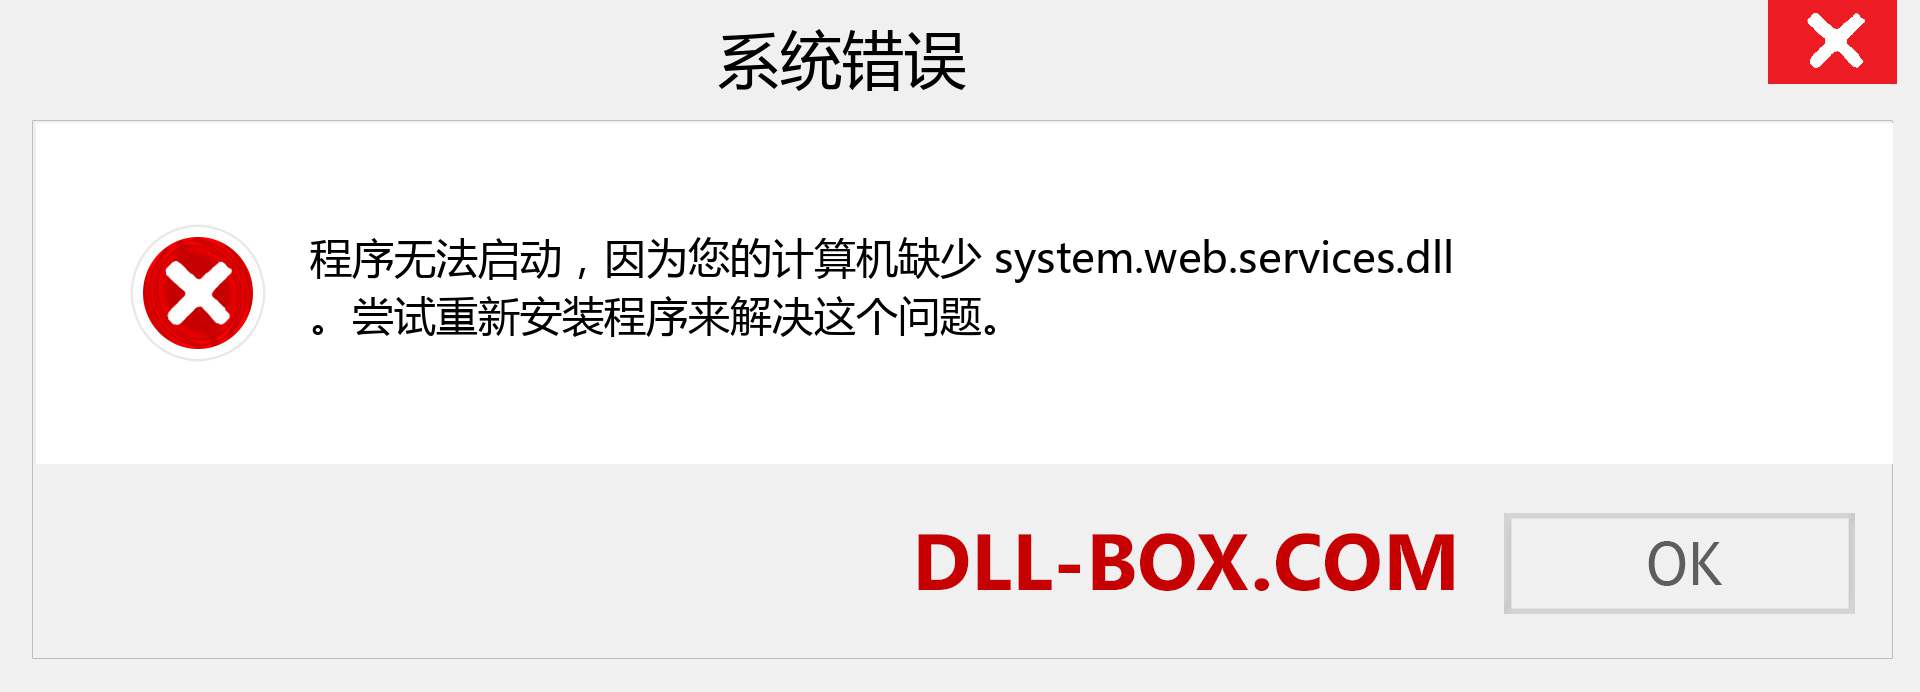 system.web.services.dll 文件丢失？。 适用于 Windows 7、8、10 的下载 - 修复 Windows、照片、图像上的 system.web.services dll 丢失错误